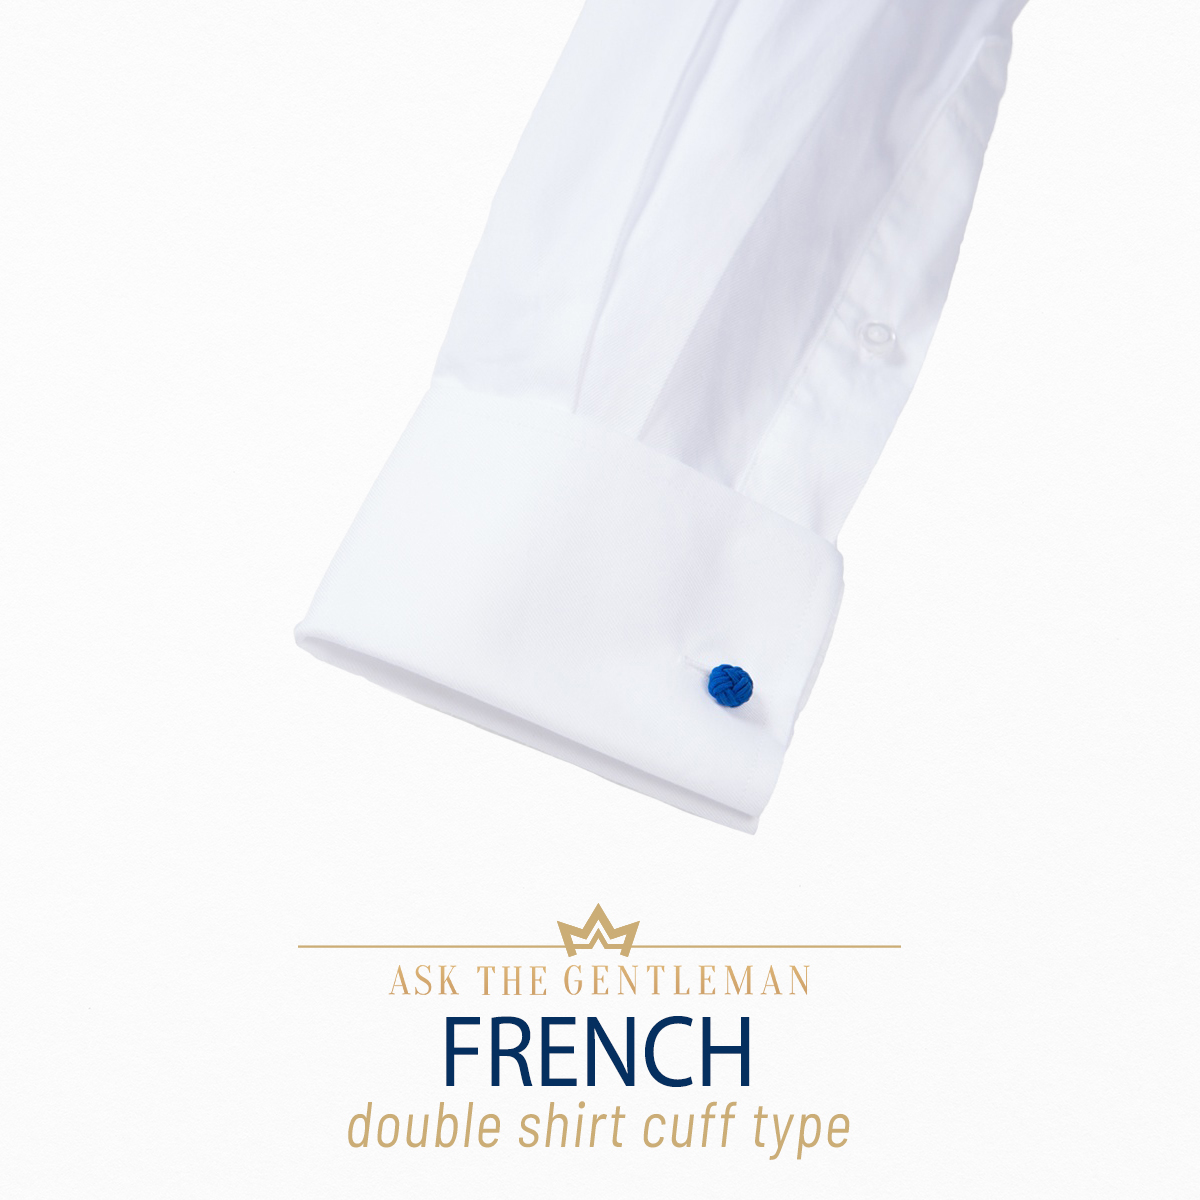 French dress shirt cuff